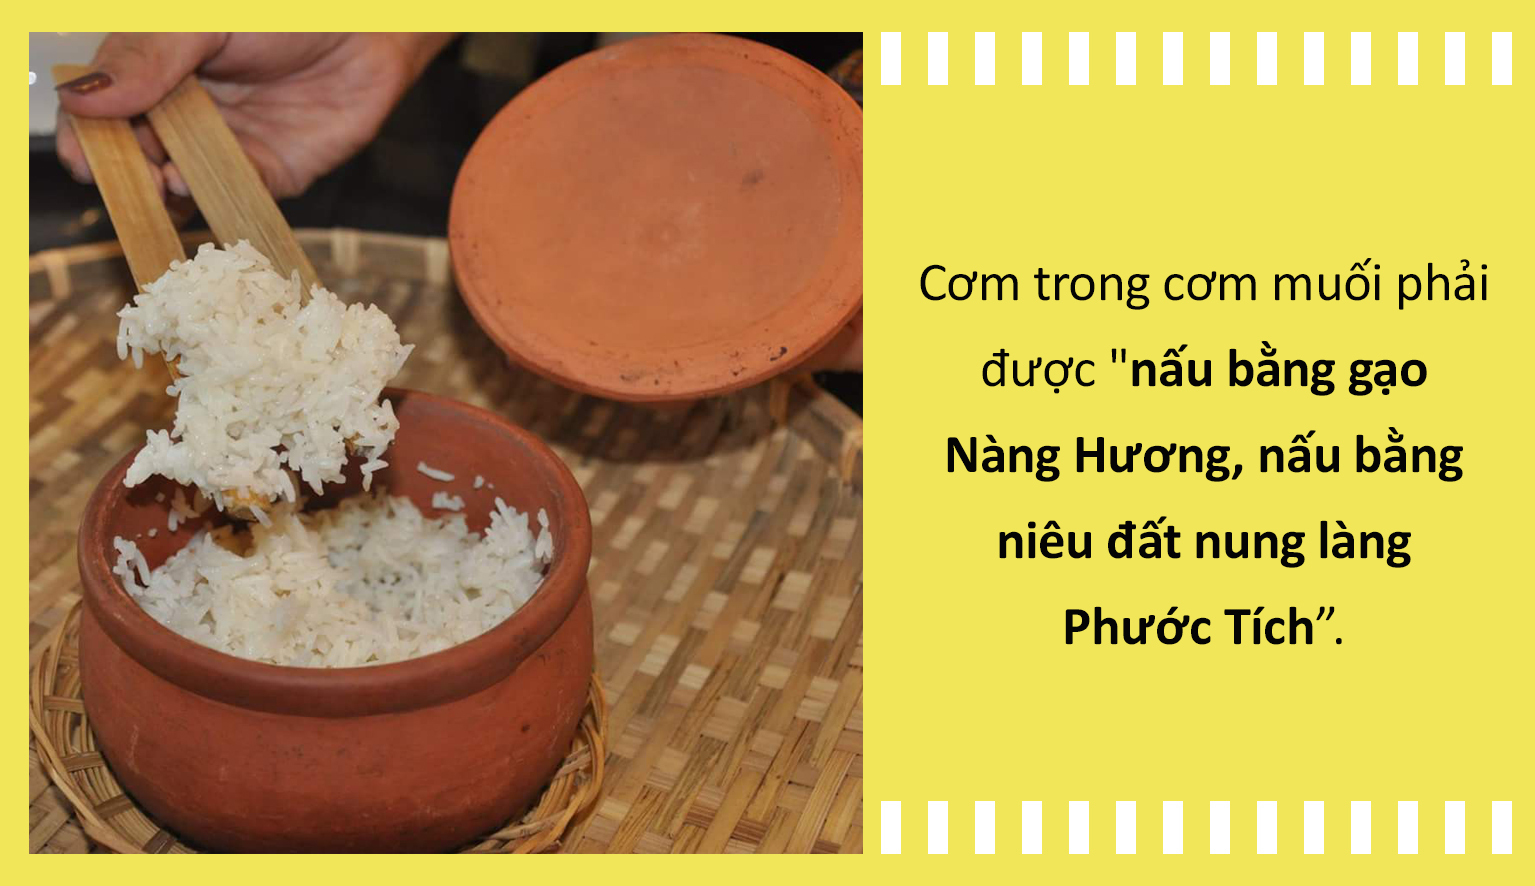 Ẩm thực Việt: Cơm muối - Món 'sơn trân hải vị' ở xứ Huế, có tiền cũng khó mà ăn - 3